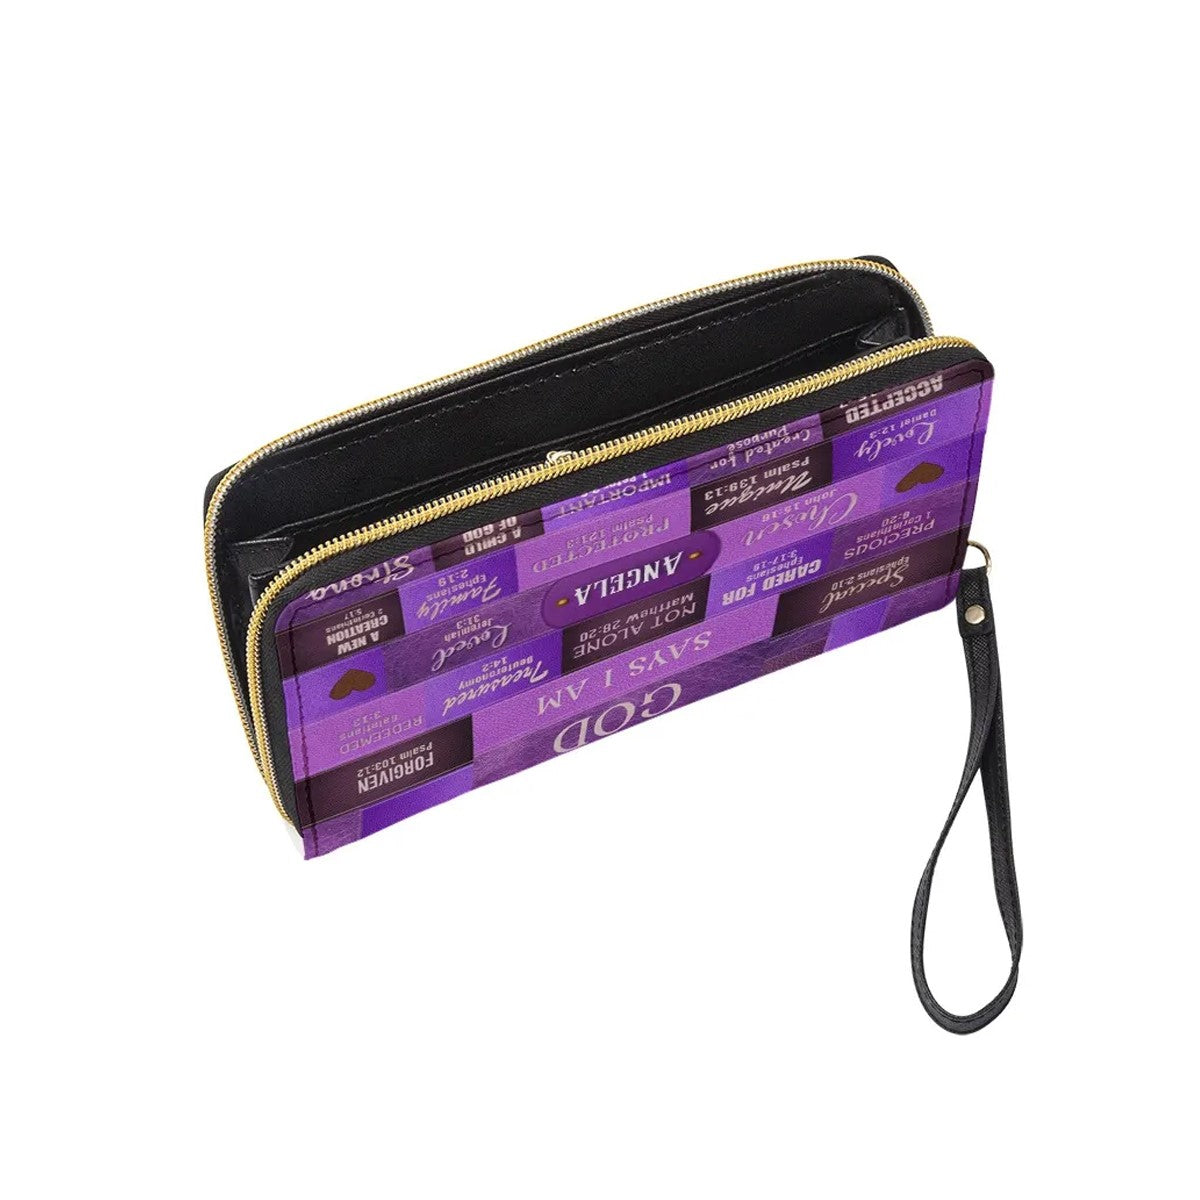 Christianartbag Handbags, God Says I Am Leather Handbag Purple, Personalized Bags, Gifts for Women, Christmas Gift, CABLTB02240923. - Christian Art Bag